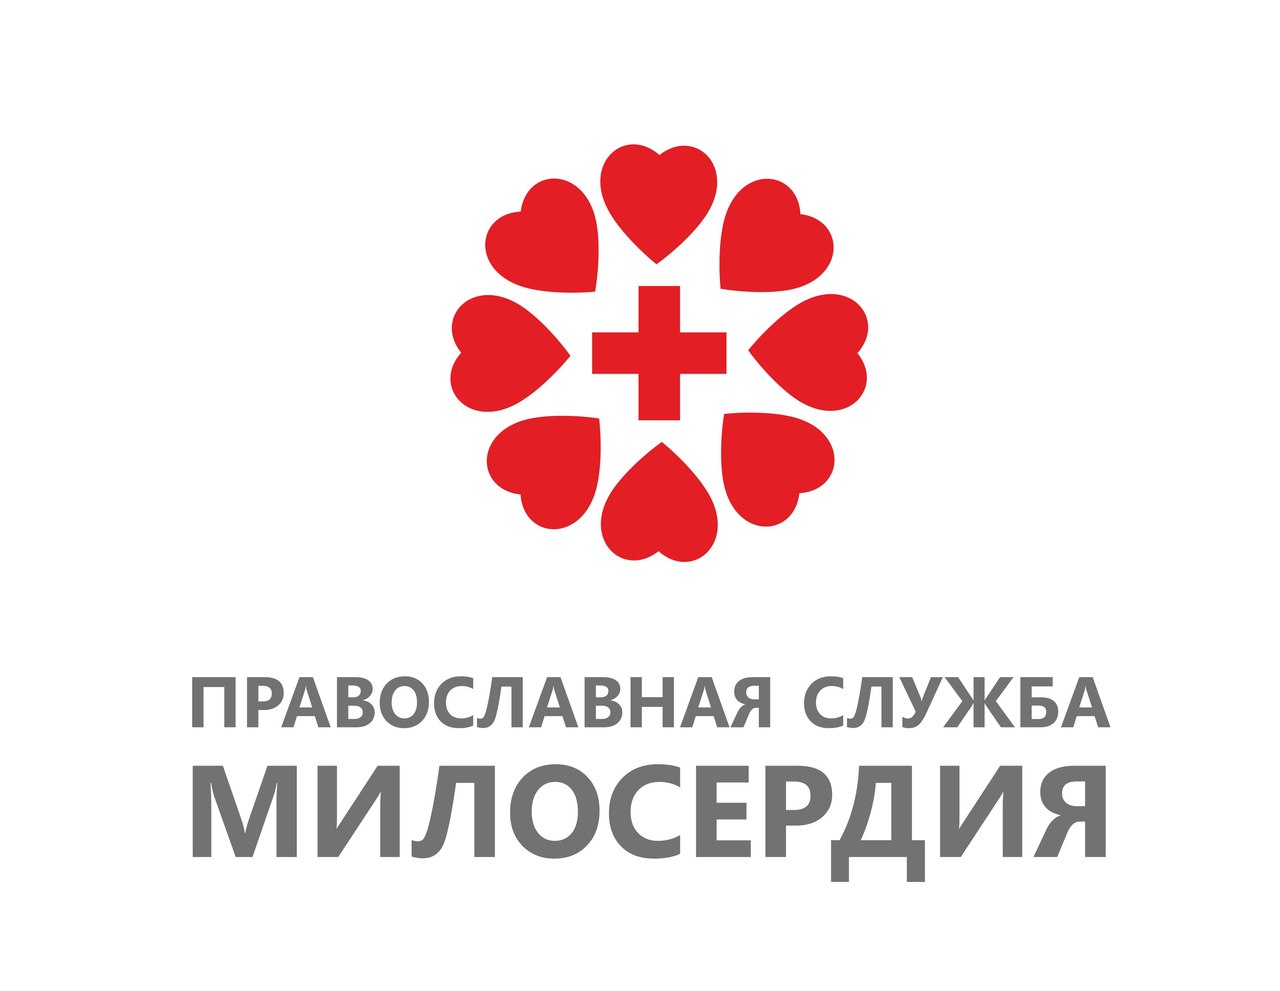 Логотип службы милосердия